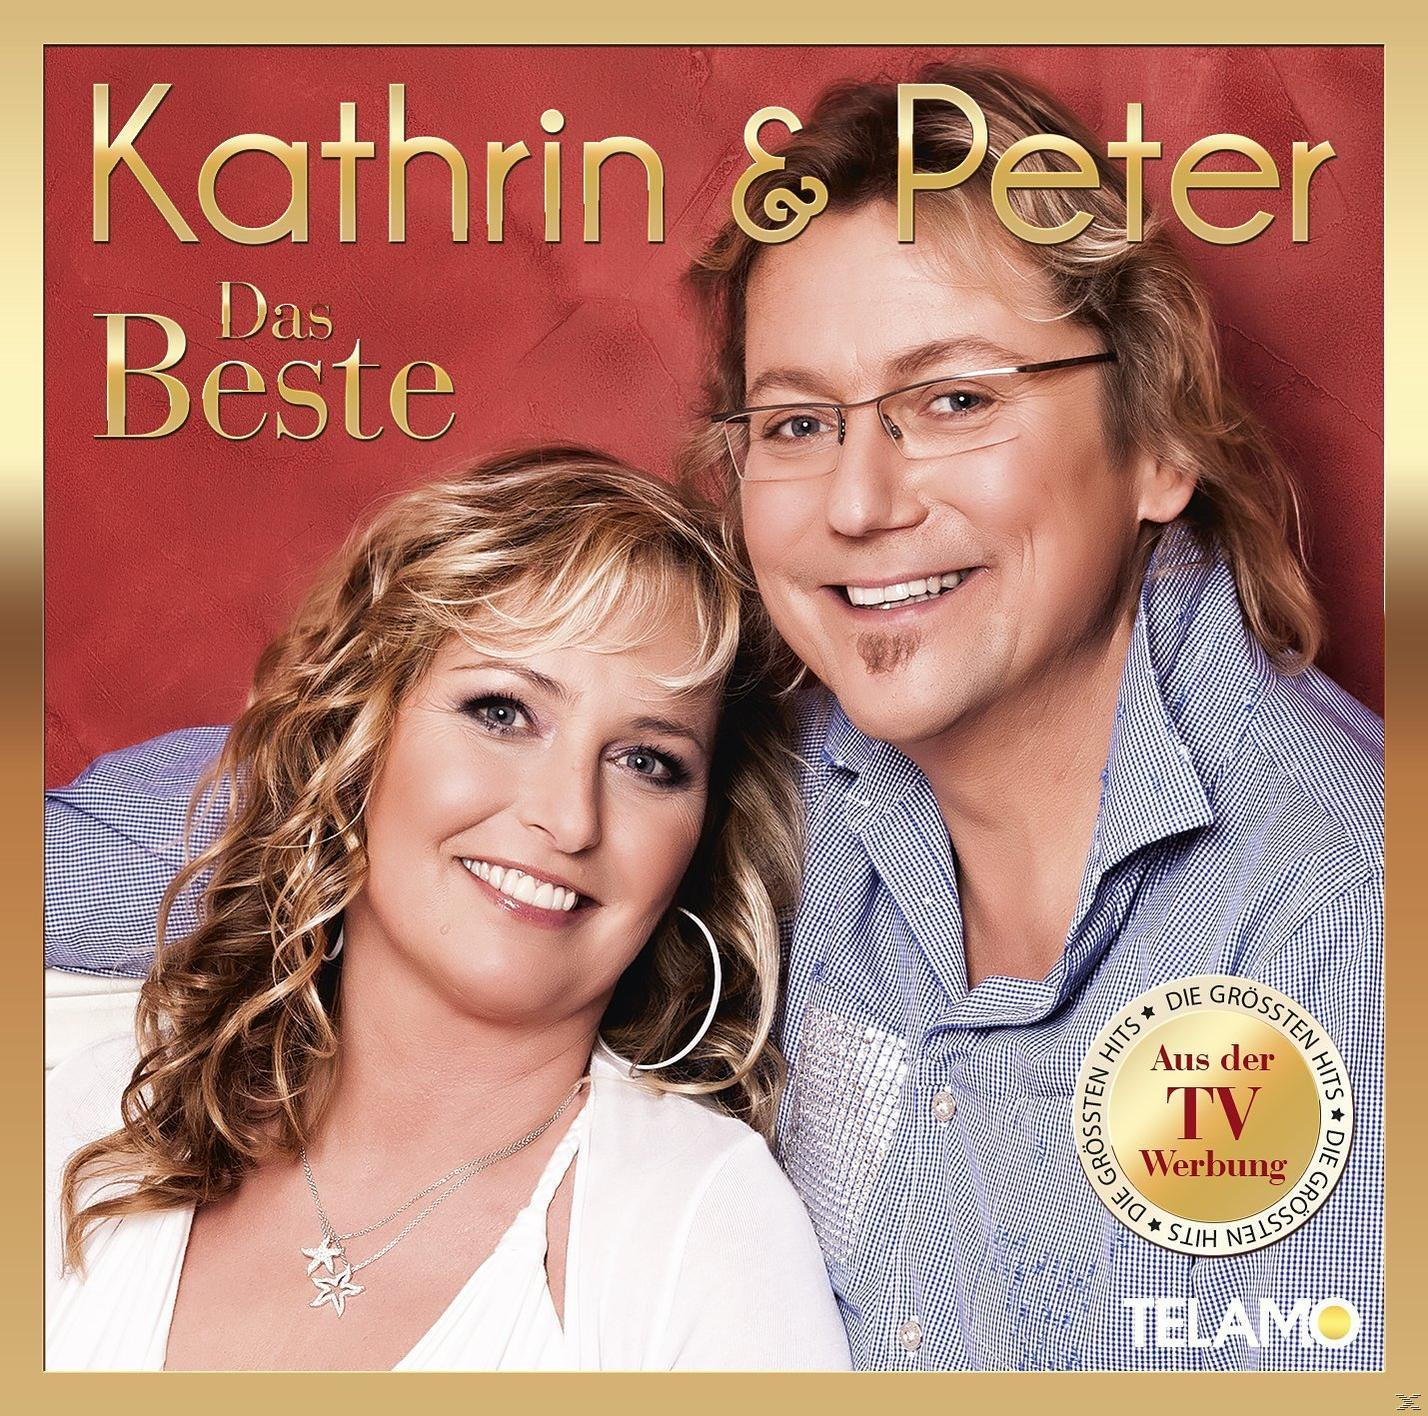 & - Das Peter (CD) Kathrin - Beste